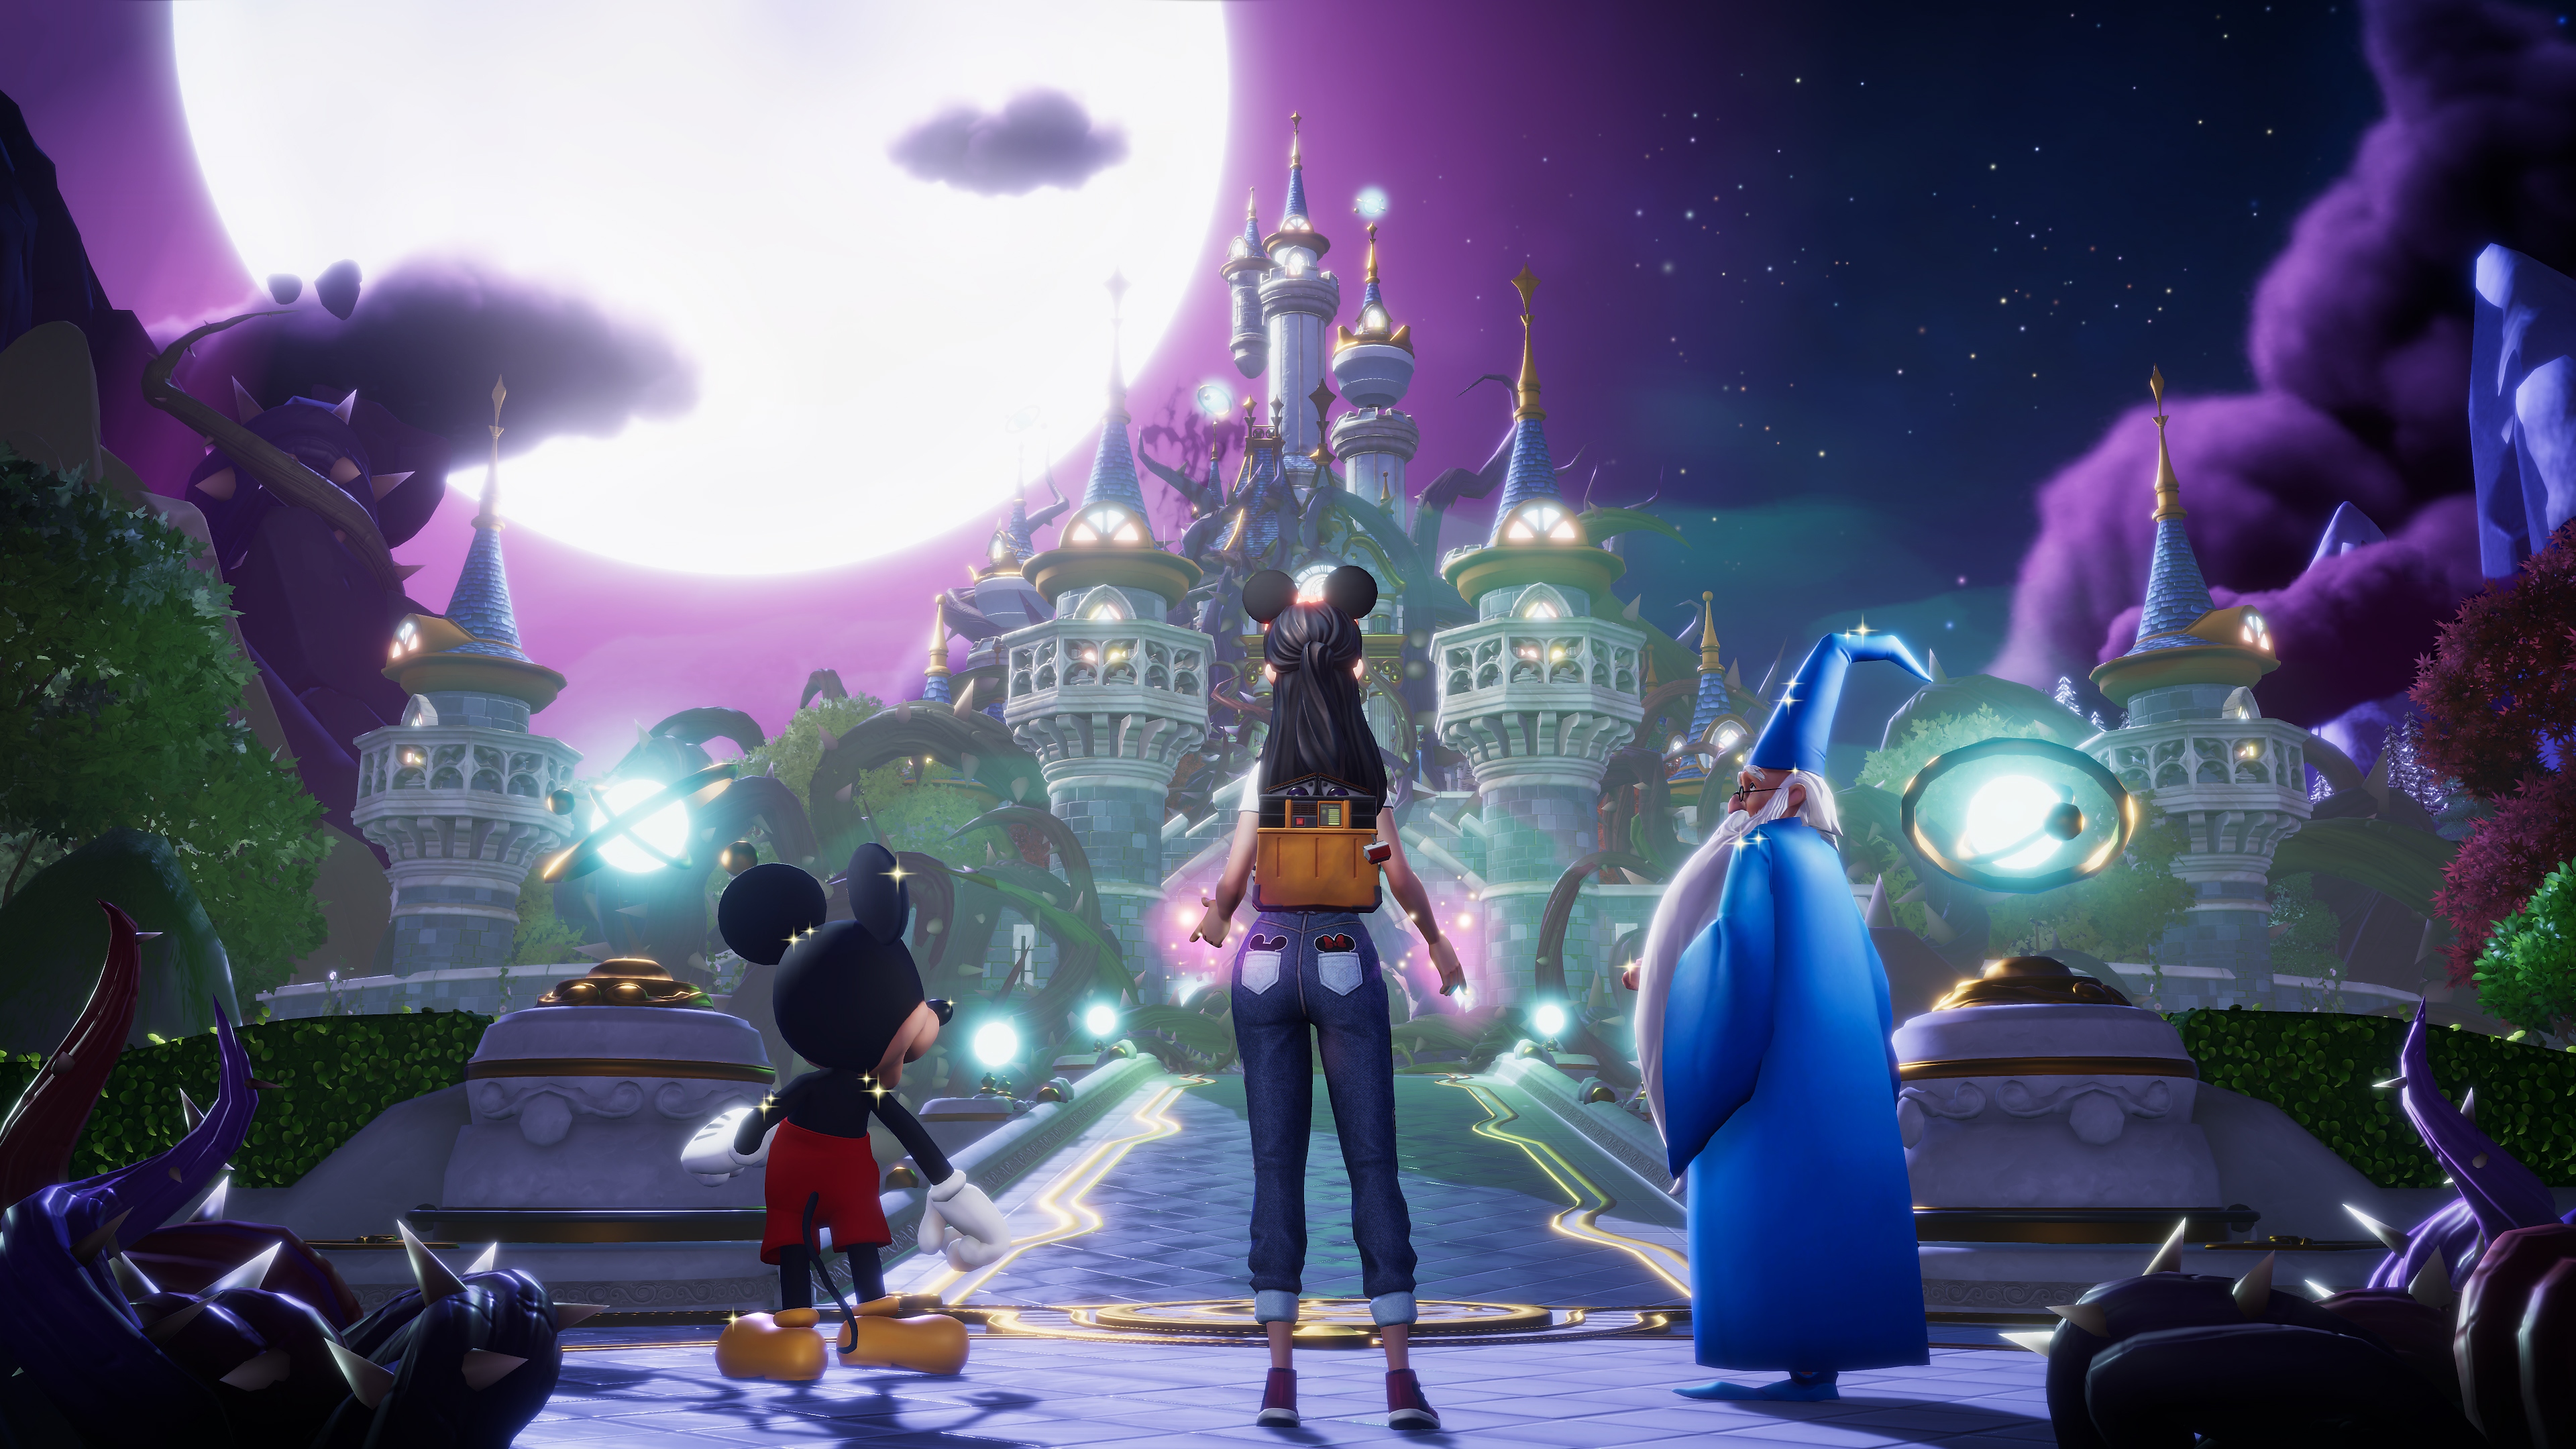 Captura de pantalla de Disney Dreamlight Valley mostrando a Mickey Mouse, Merlin y el avatar de un jugador mirando hacia un castillo bajo una gran luna llena.